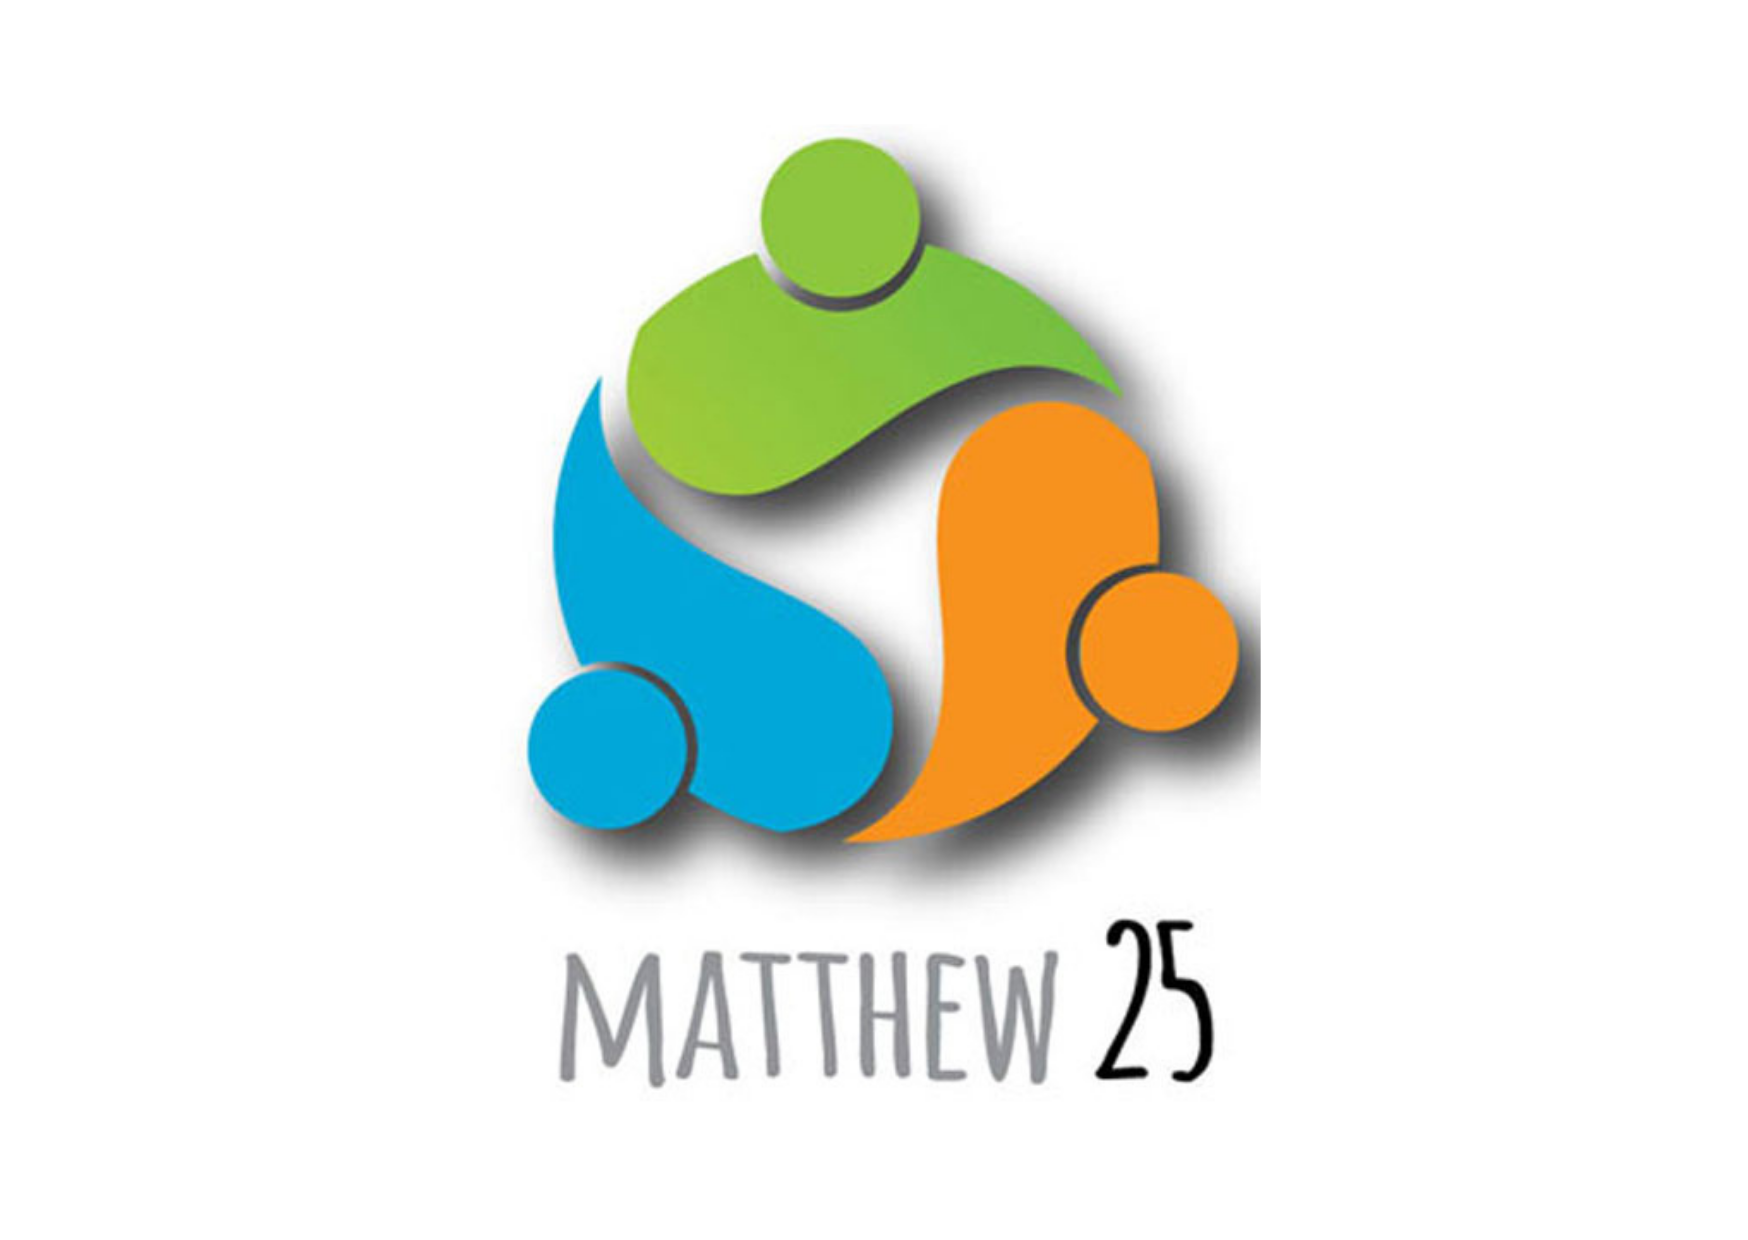 Matthew 25 Initiative Update